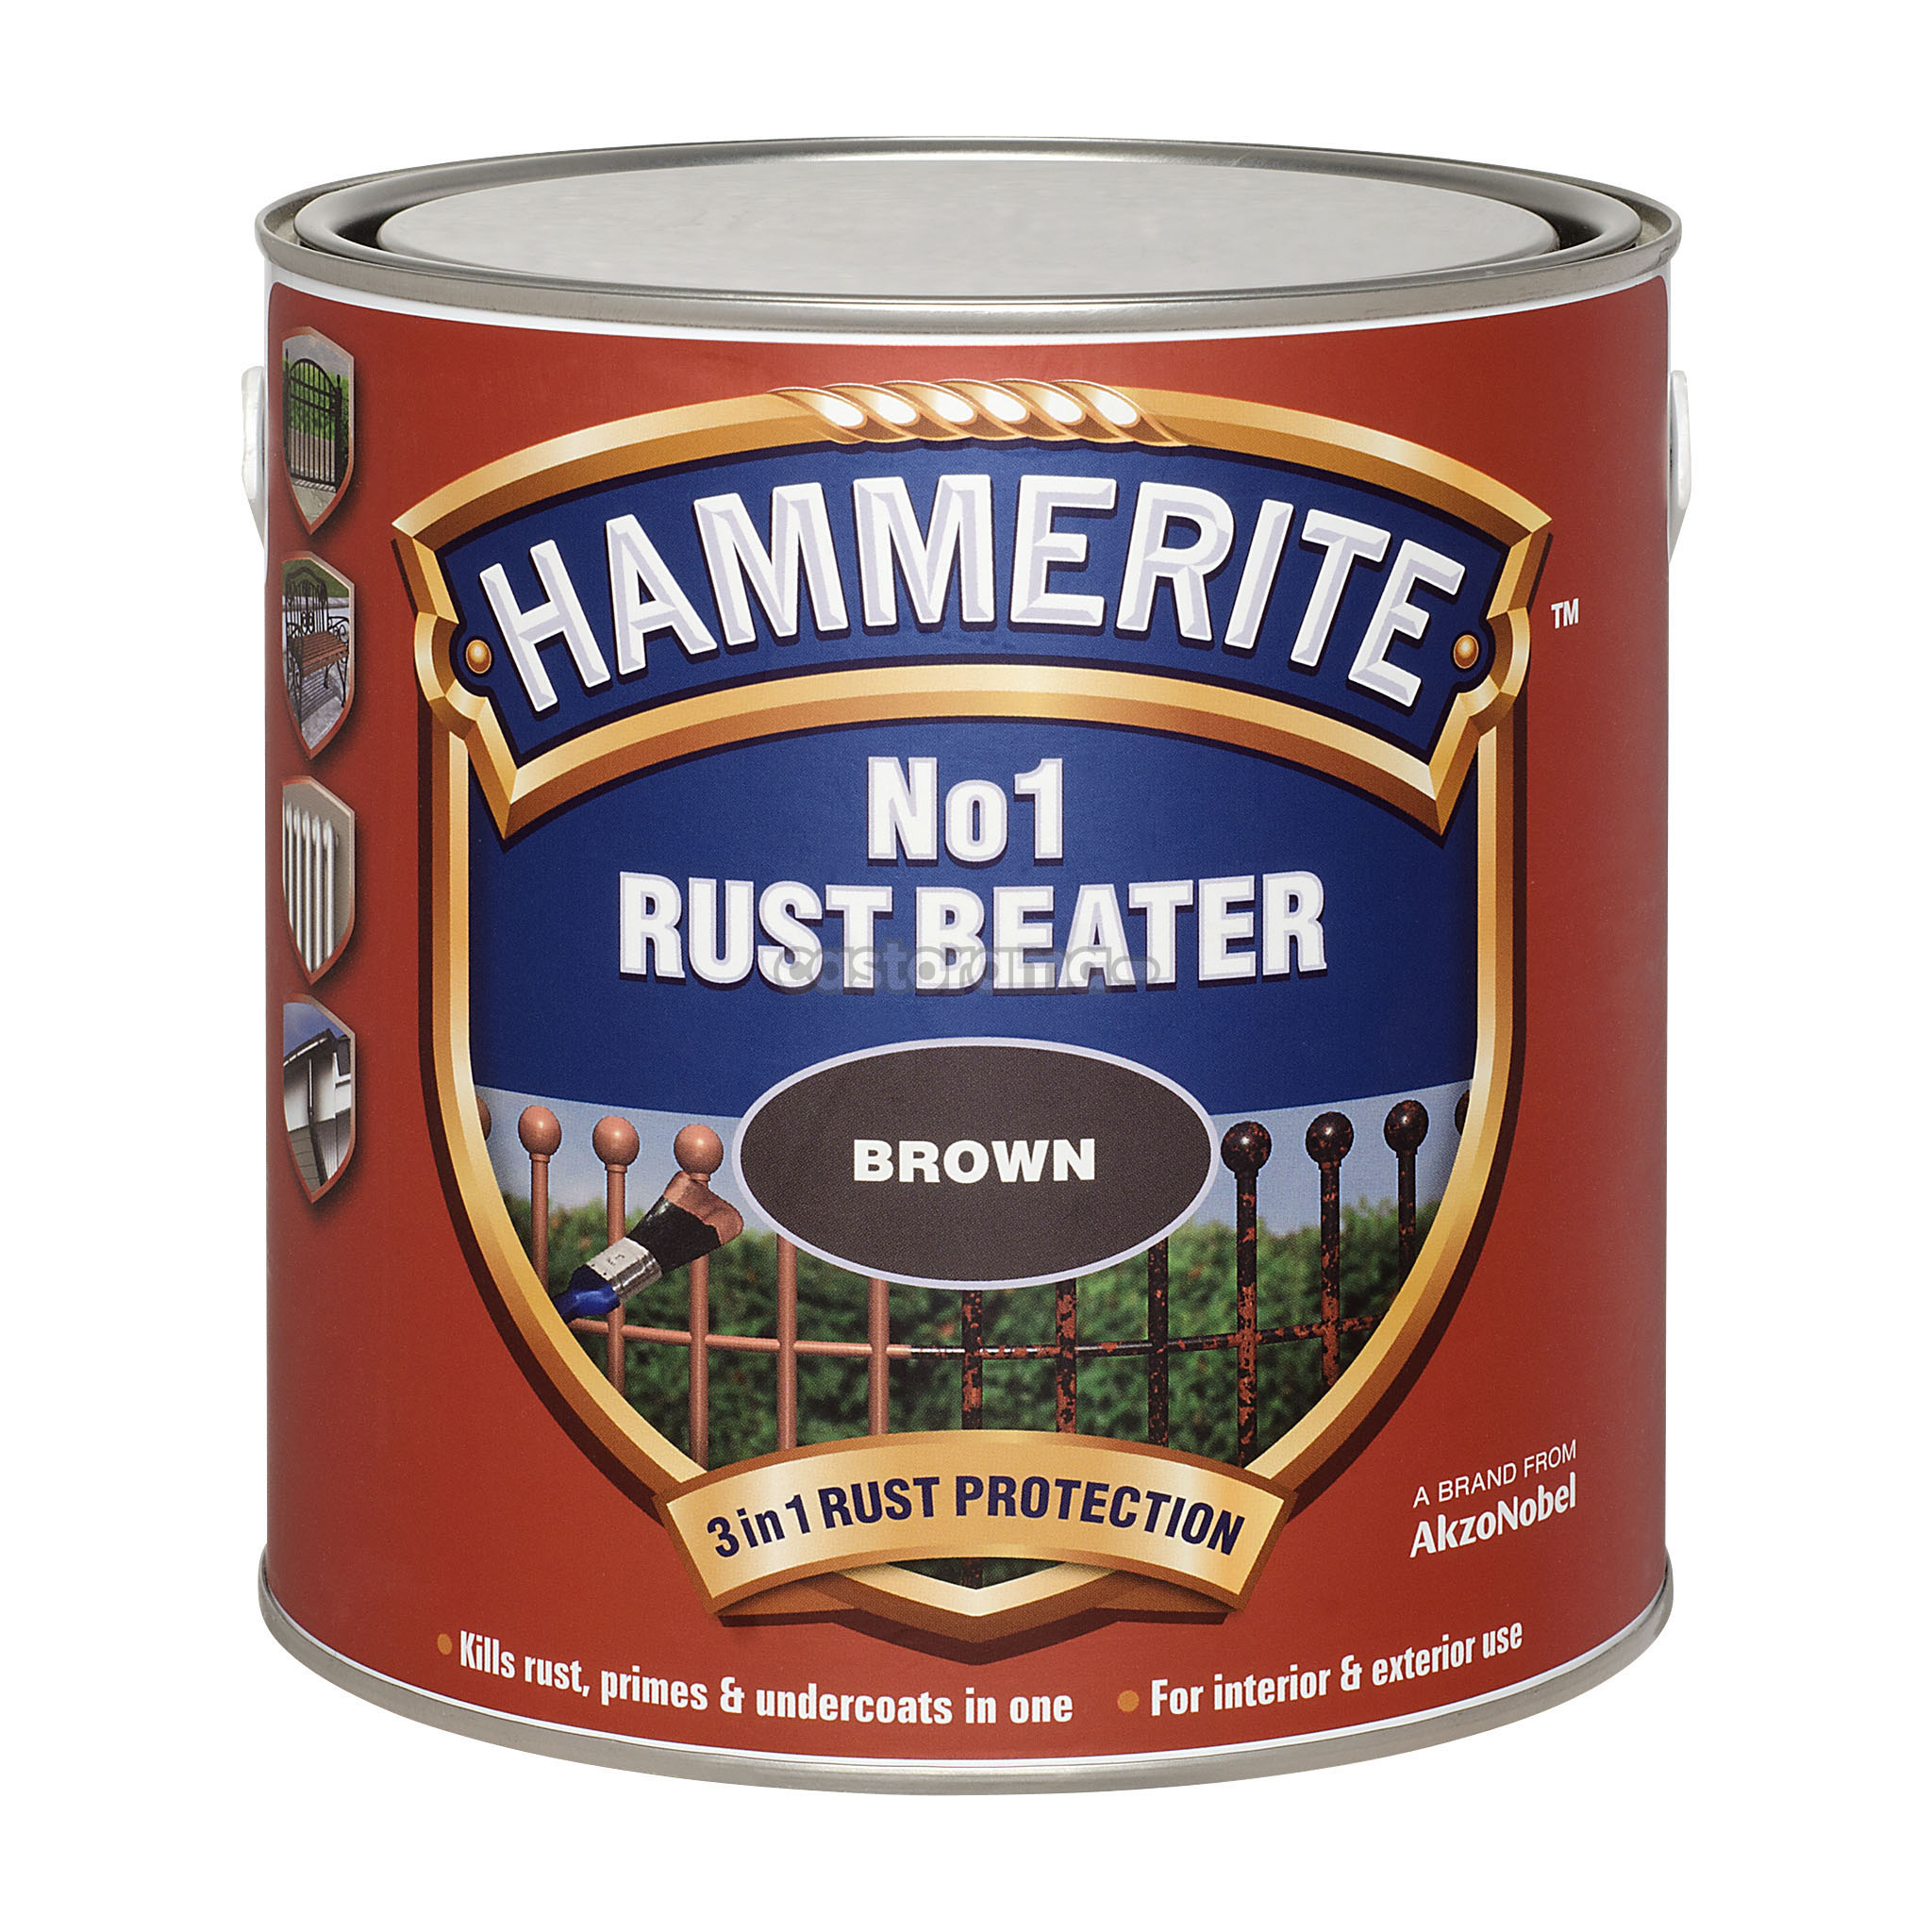 Hammerite rust beater грунт антикоррозийный коричневый для черных металлов